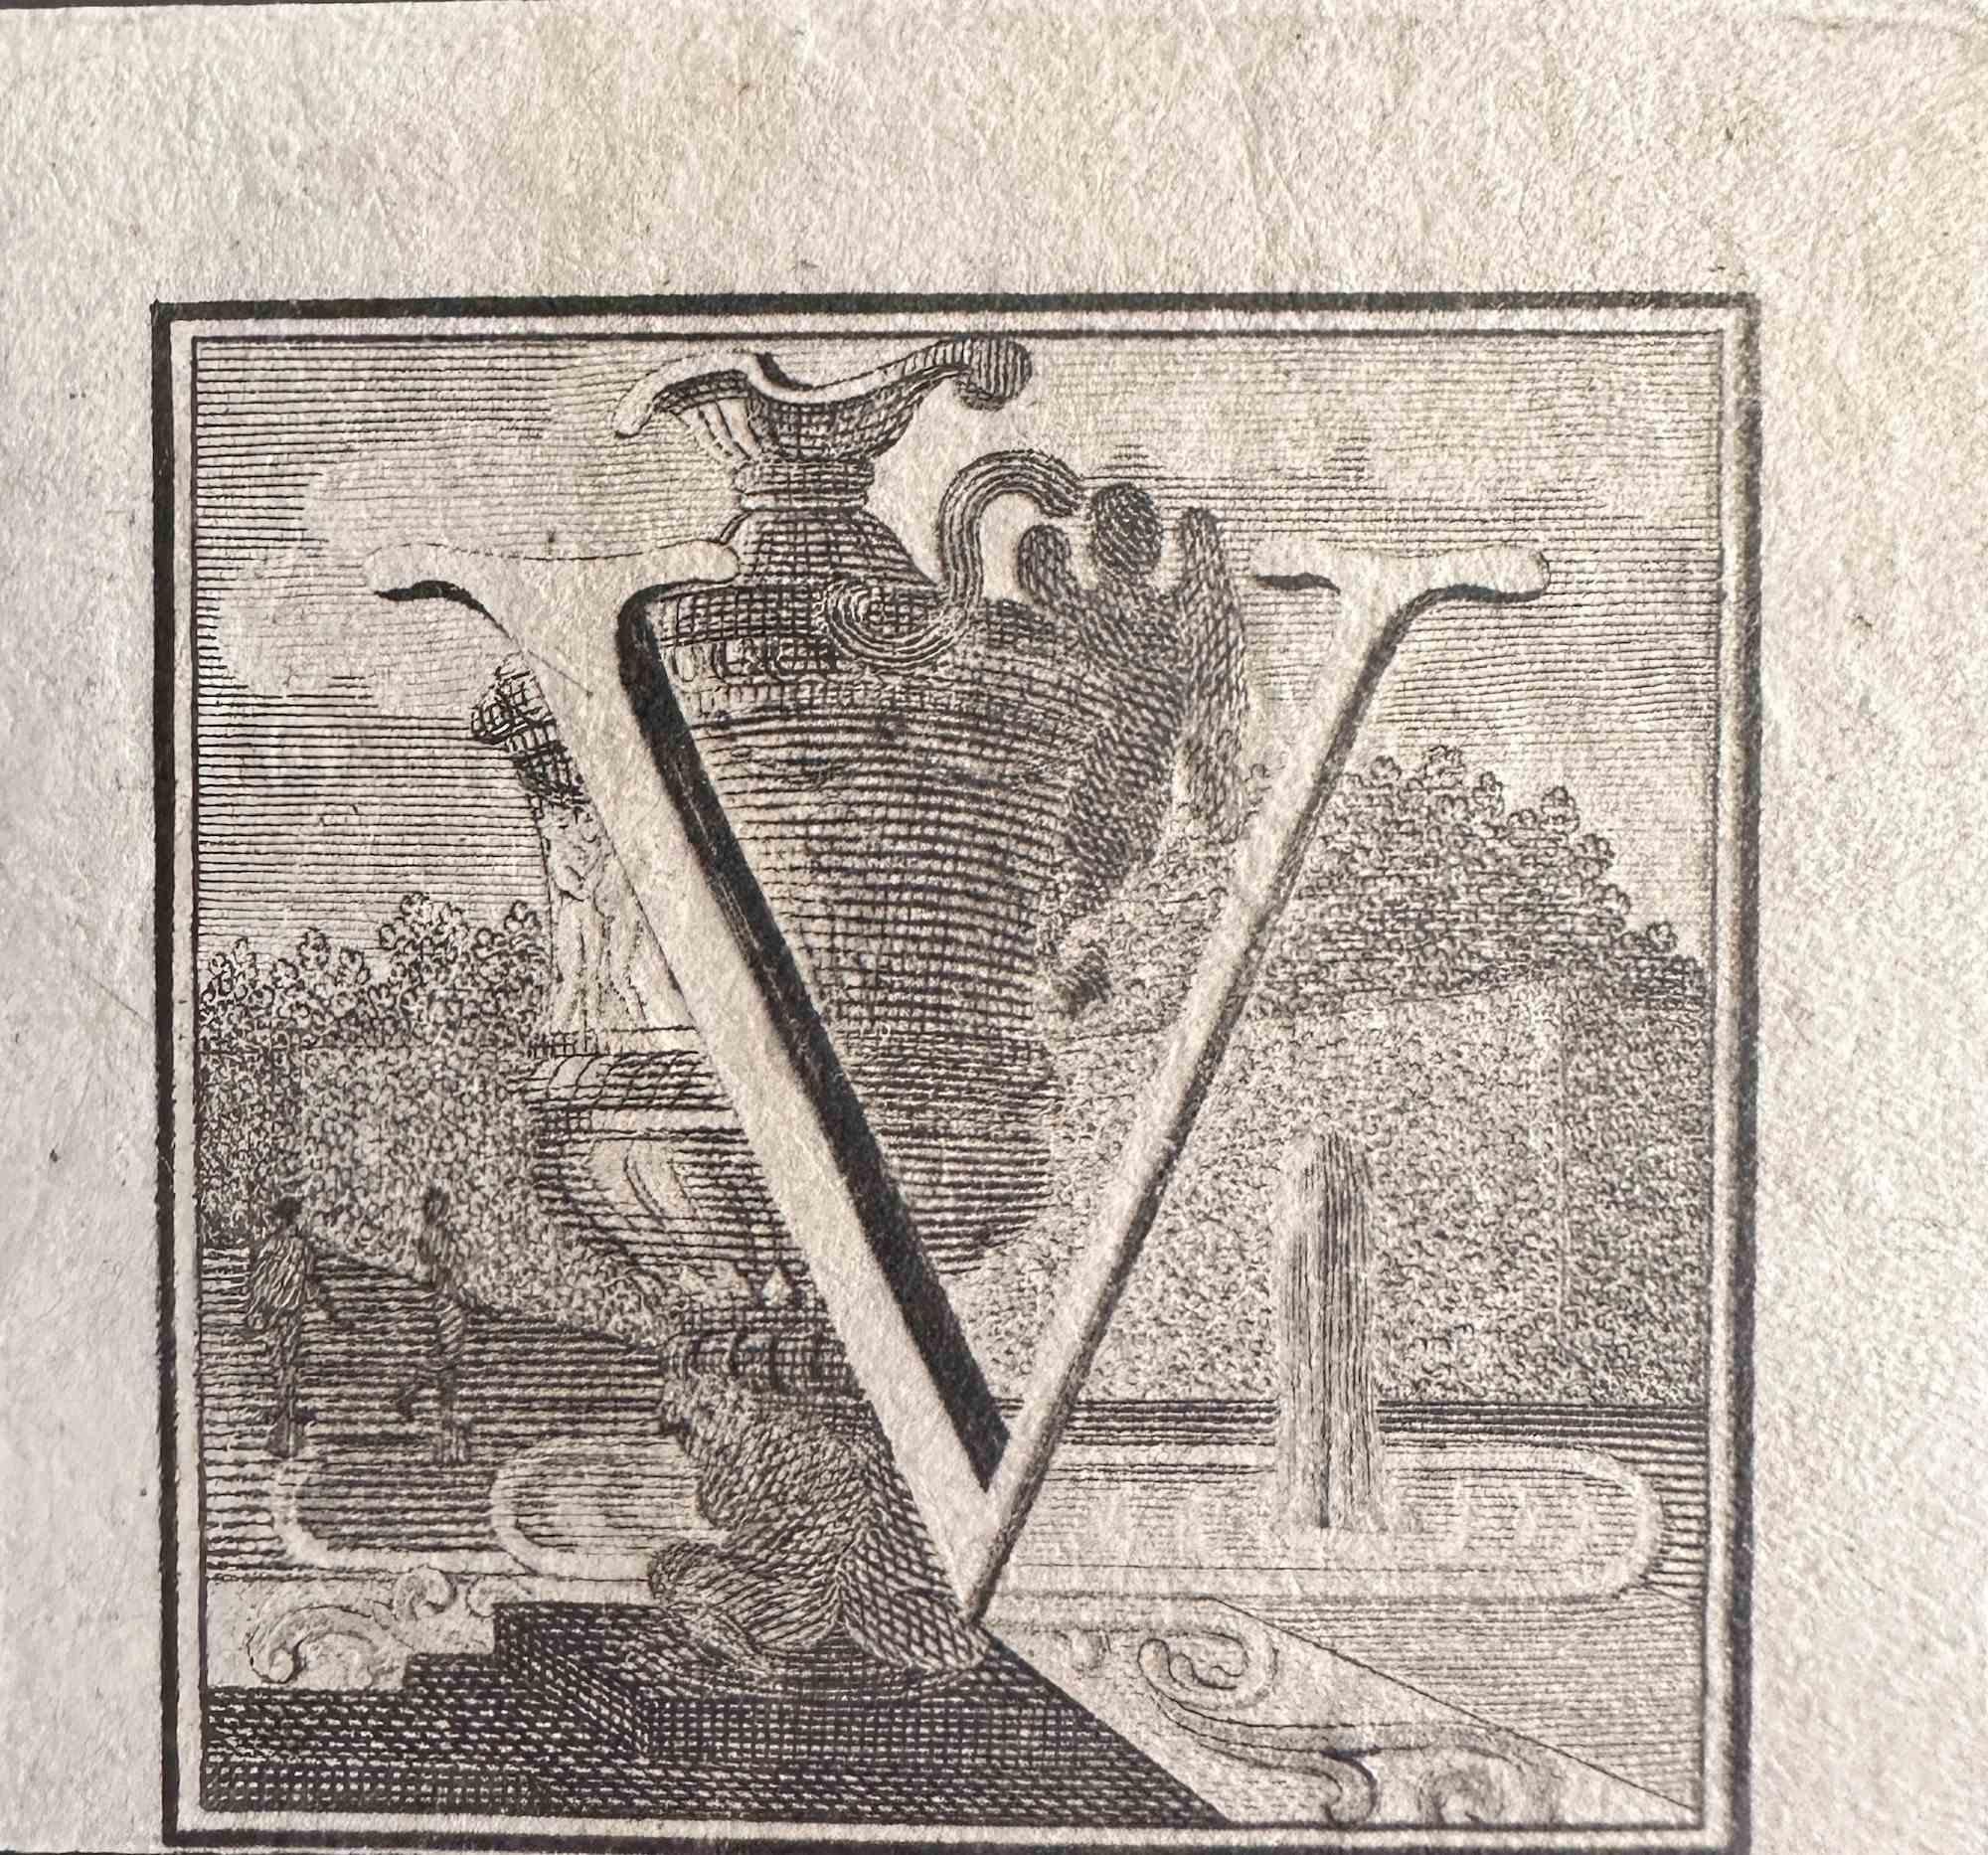 La lettre V est une gravure réalisée par Luigi Vanvitelli, artiste du XVIIIe siècle.

Bonnes conditions.

La gravure appartient à la suite d'estampes "Antiquités d'Herculanum exposées" (titre original : "Le Antichità di Ercolano Esposte"), un volume